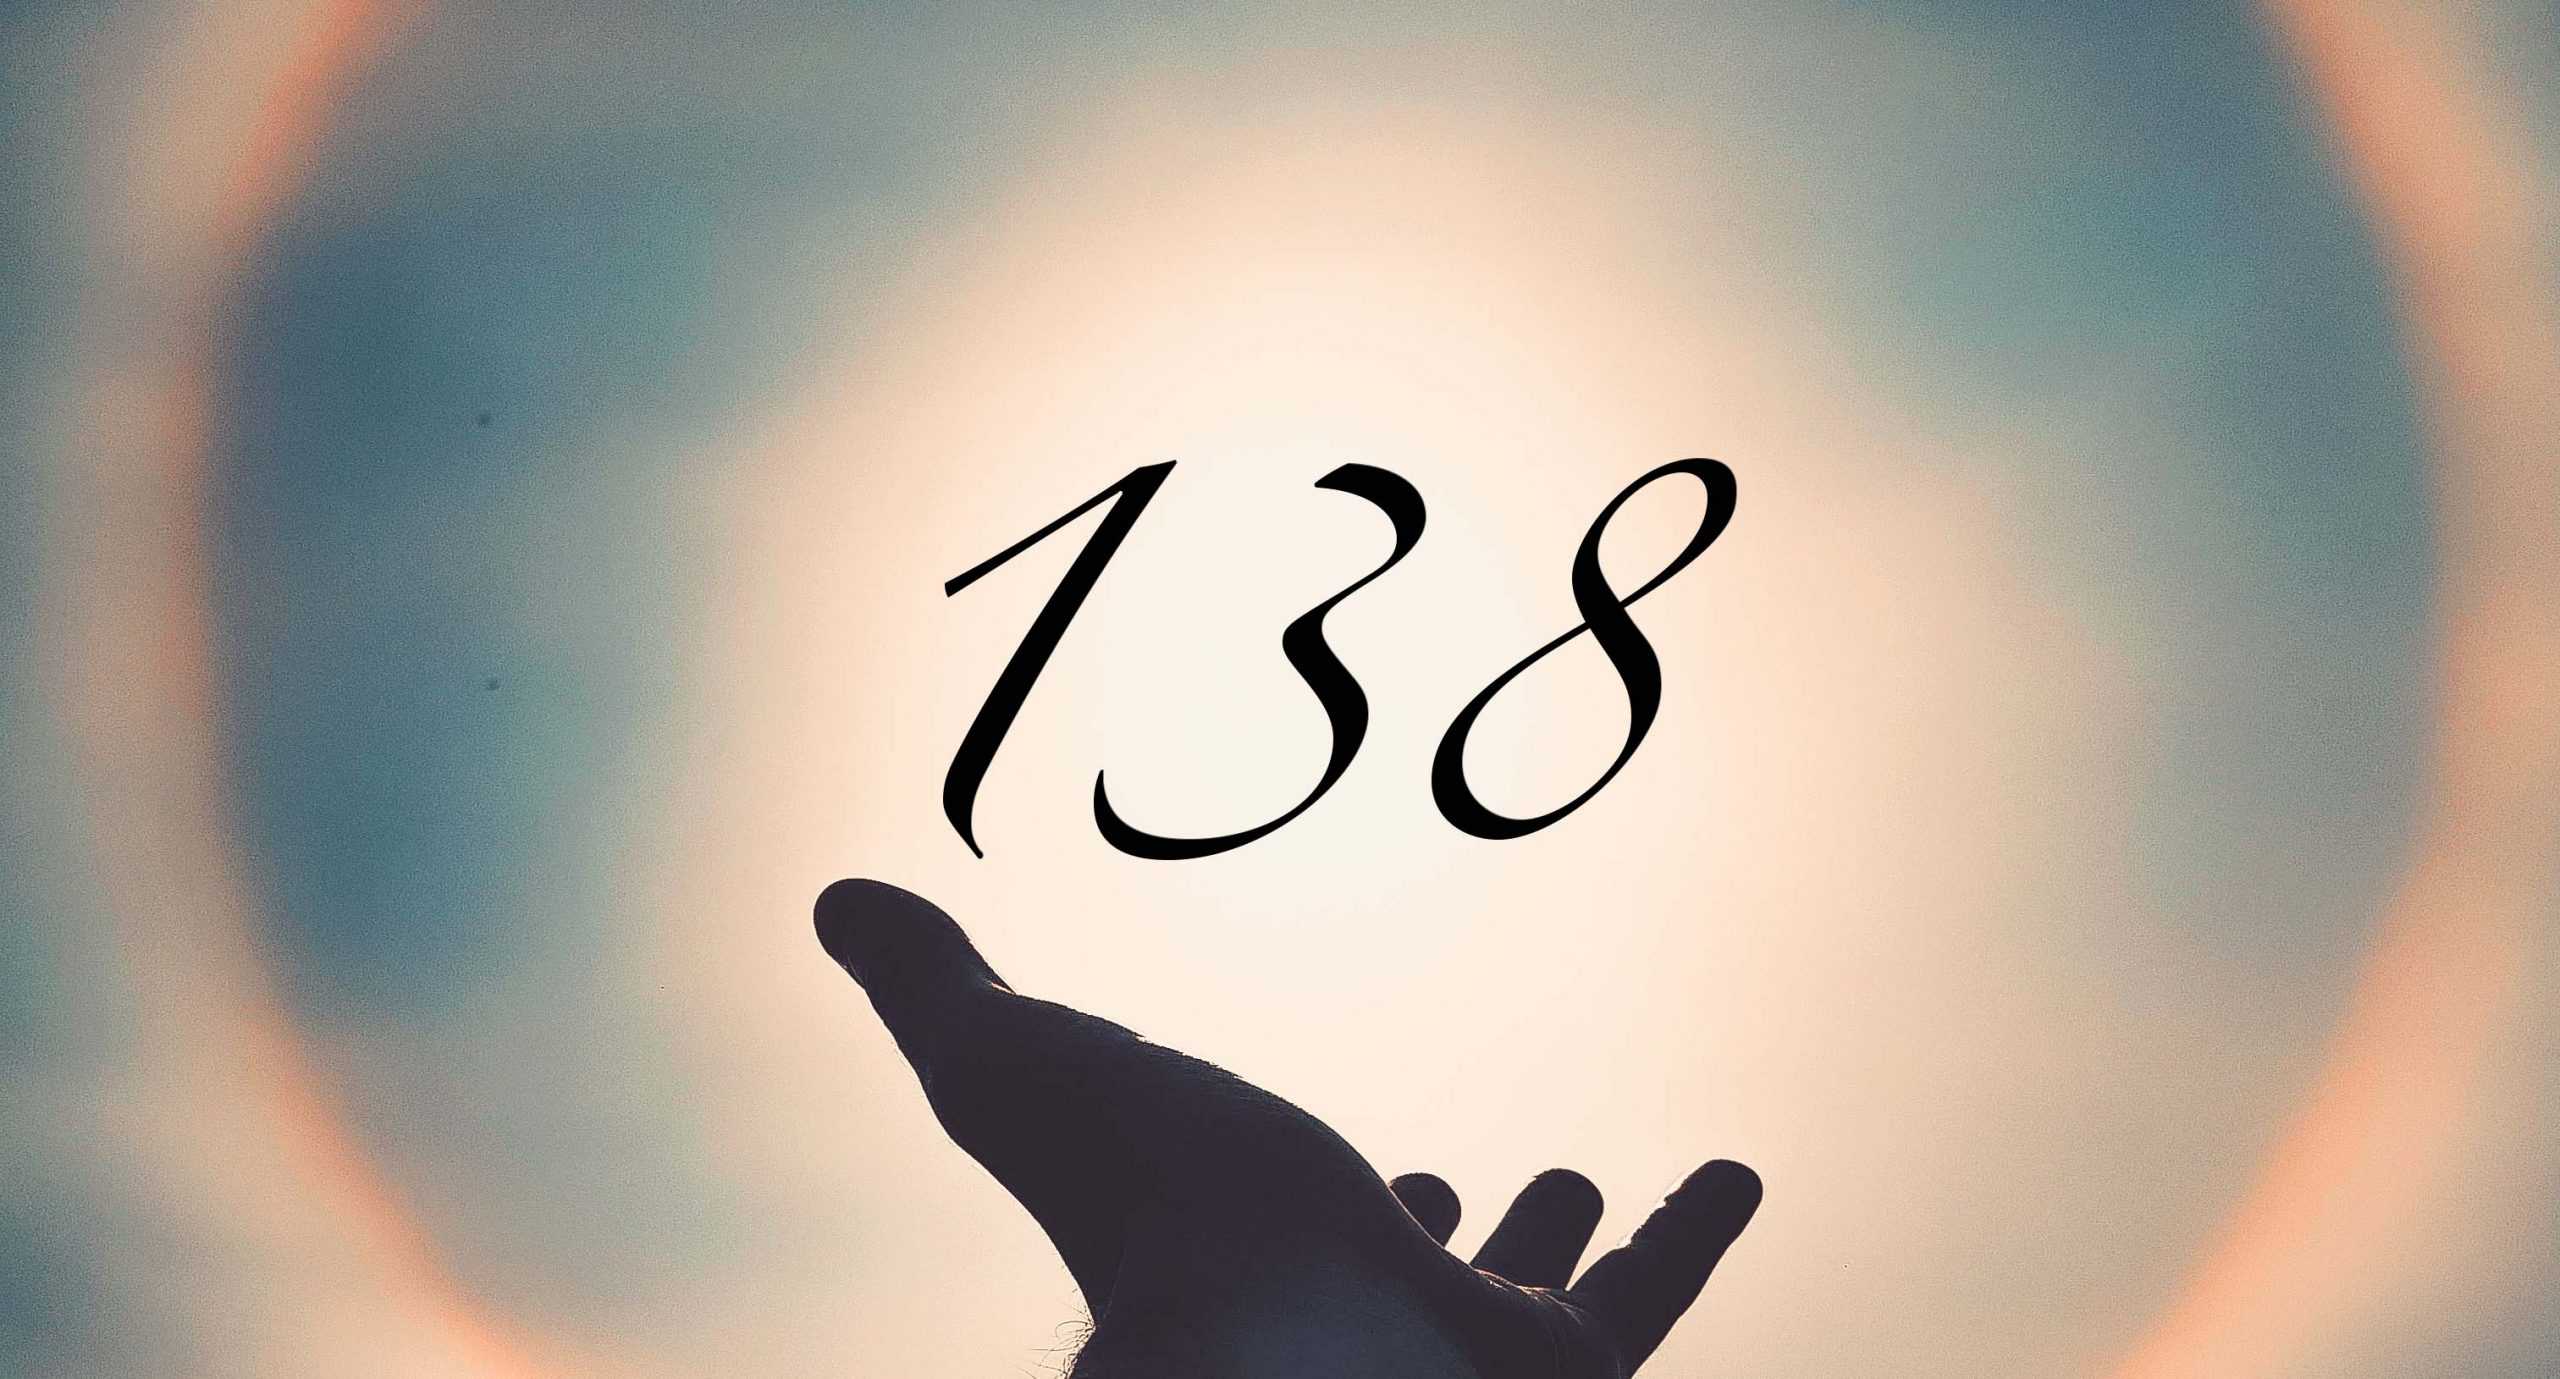 Signification du nombre 138